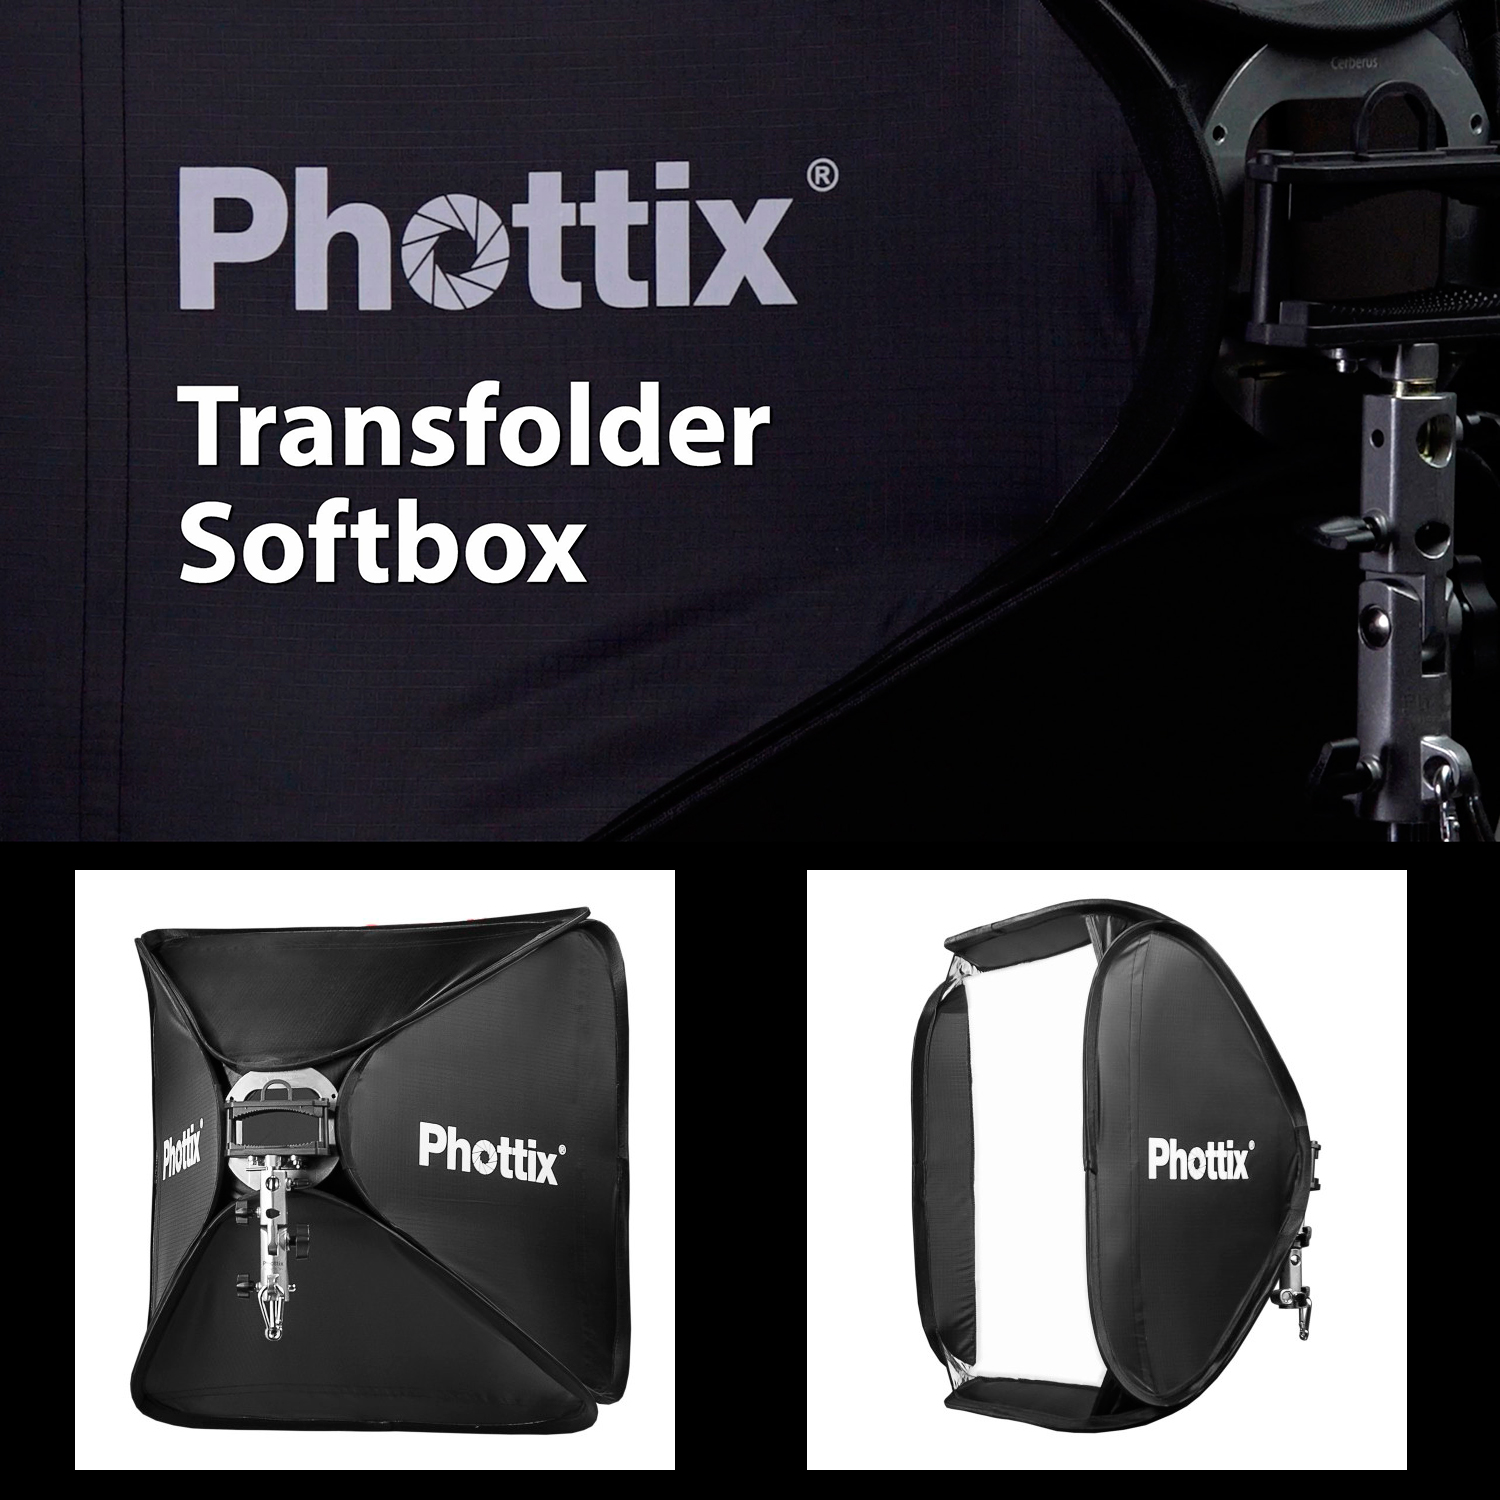 обновленный софтбокс Phottix-Transfolder